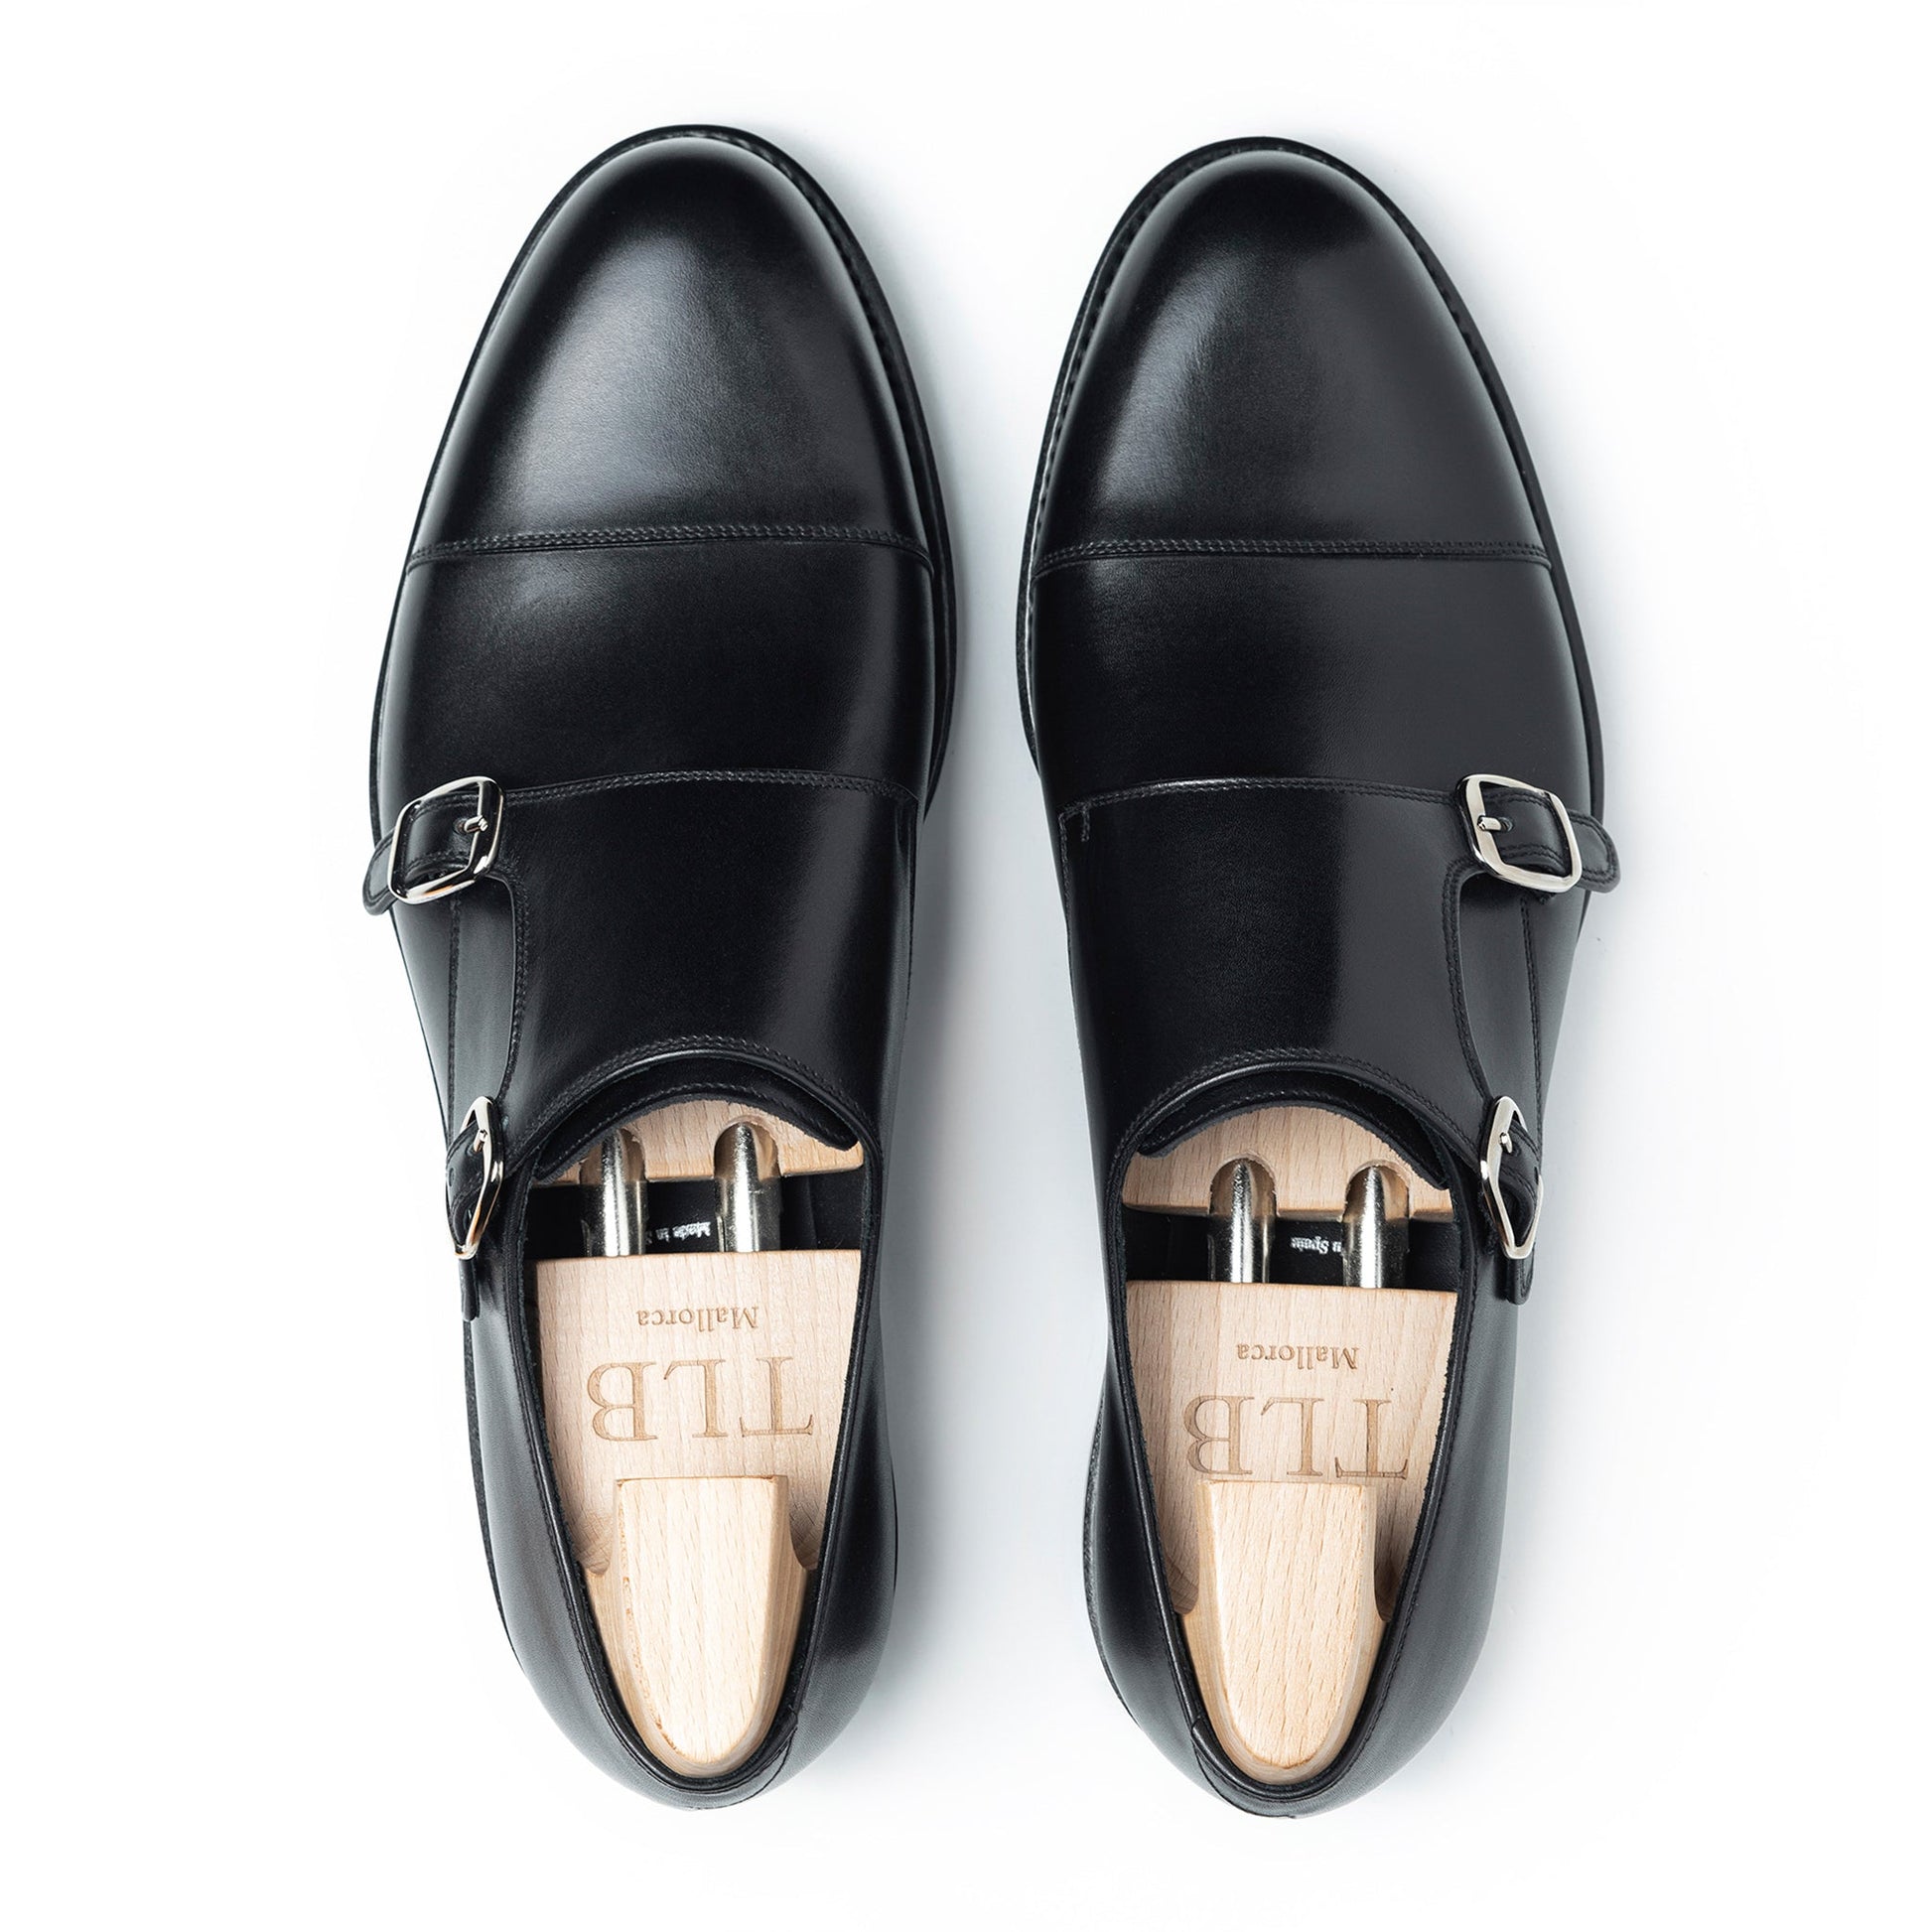 TLB Mallorca leather shoes - Men's monk shoes